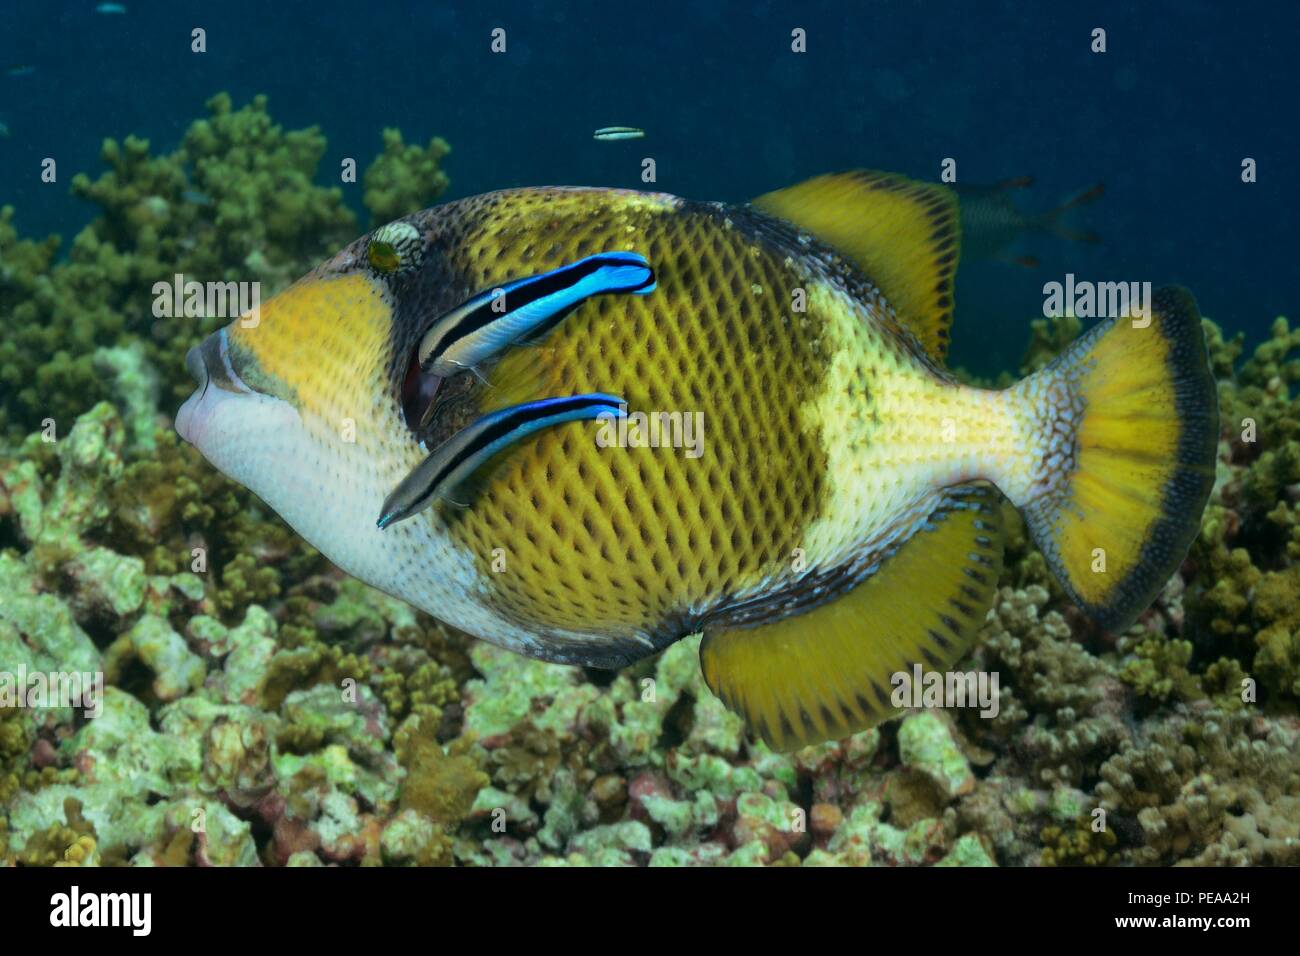 Riesen-Drückerfisch, titan triggerfish, giant triggerfish, Balistoides viridescens, Malediven, Indischer Ozean, maldives, Indian Ocean Stock Photo